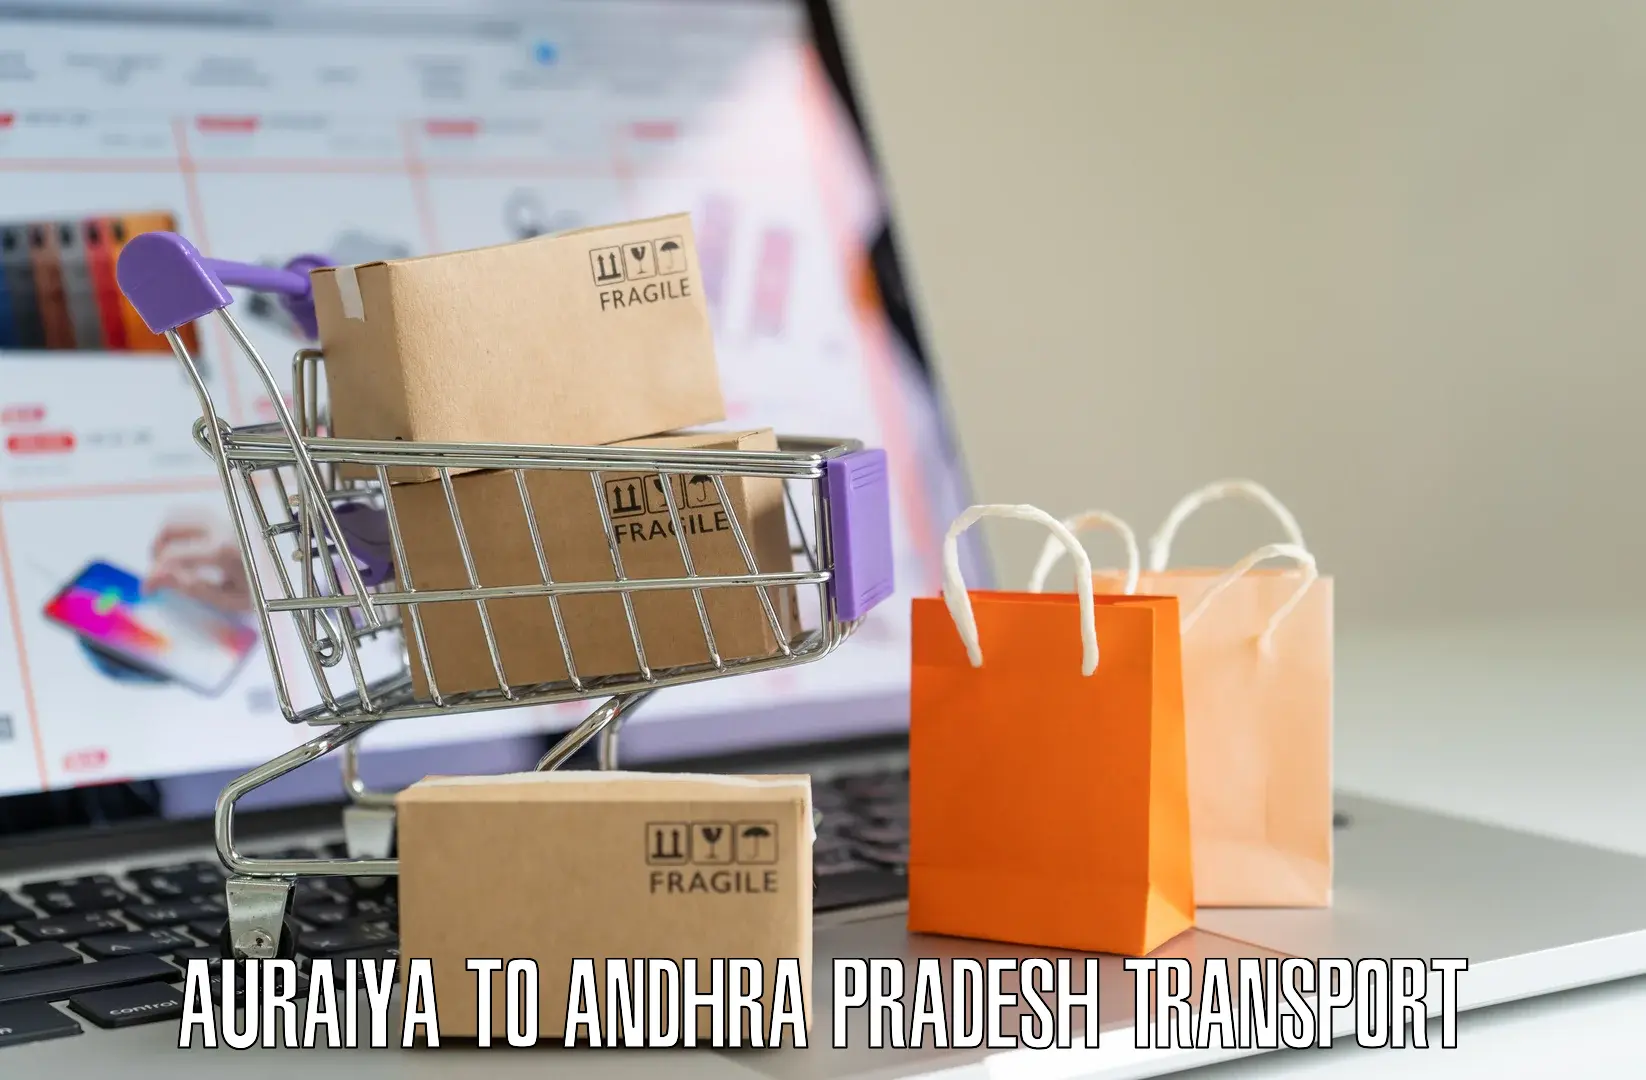 Nearest transport service Auraiya to Tada Tirupati